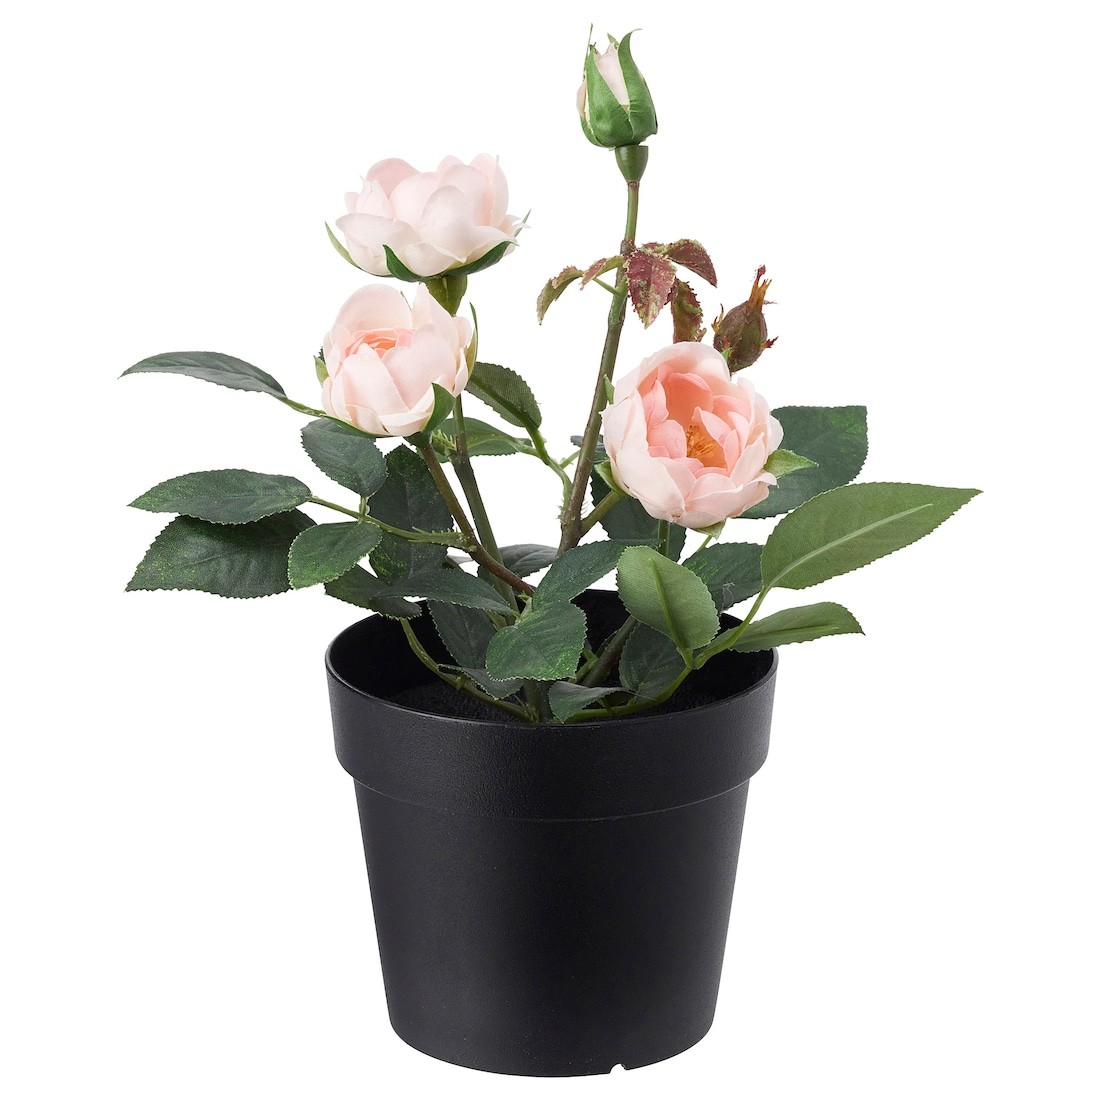 FEJKA ФЕЙКА Искусственное растение в горшке, для дома / улицы / Роза розовый, 9 см